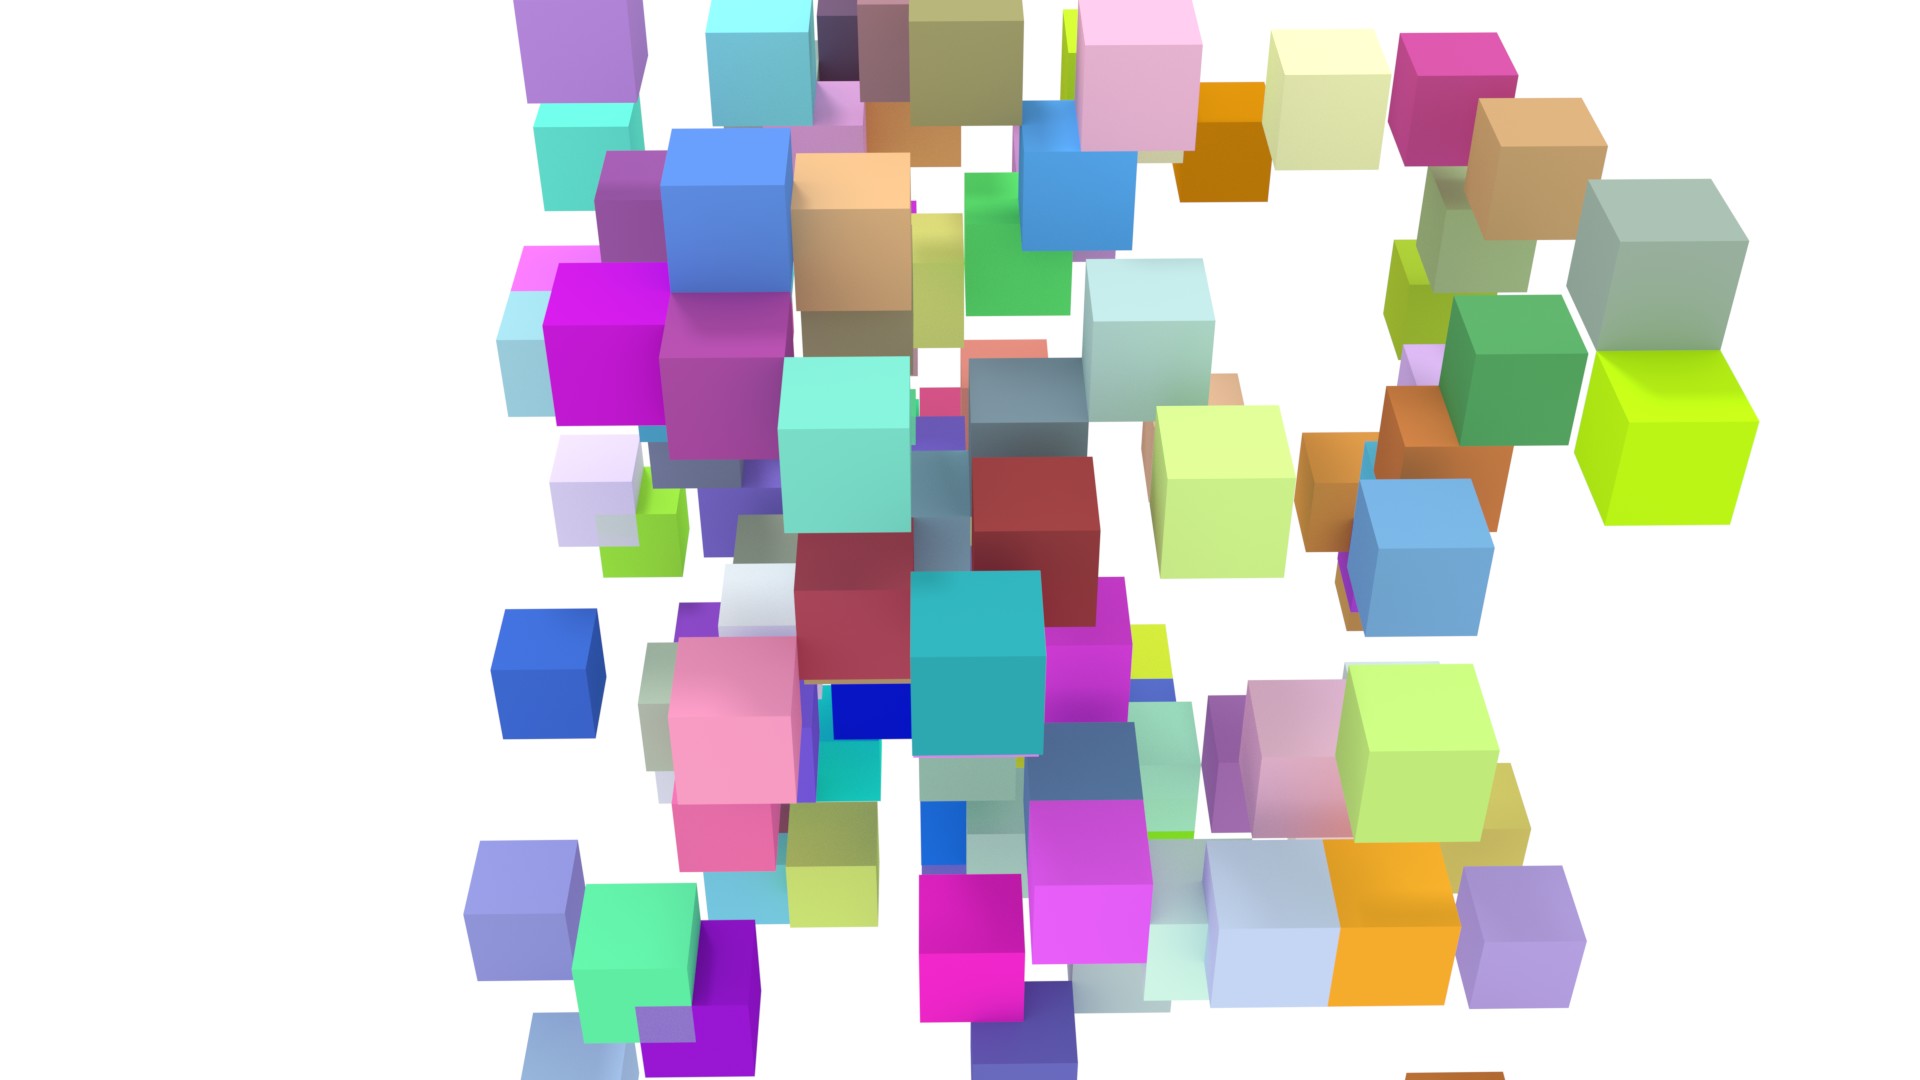 Blender Python Random Cube Animation Tutorial - Wallpaper - Video Generation 